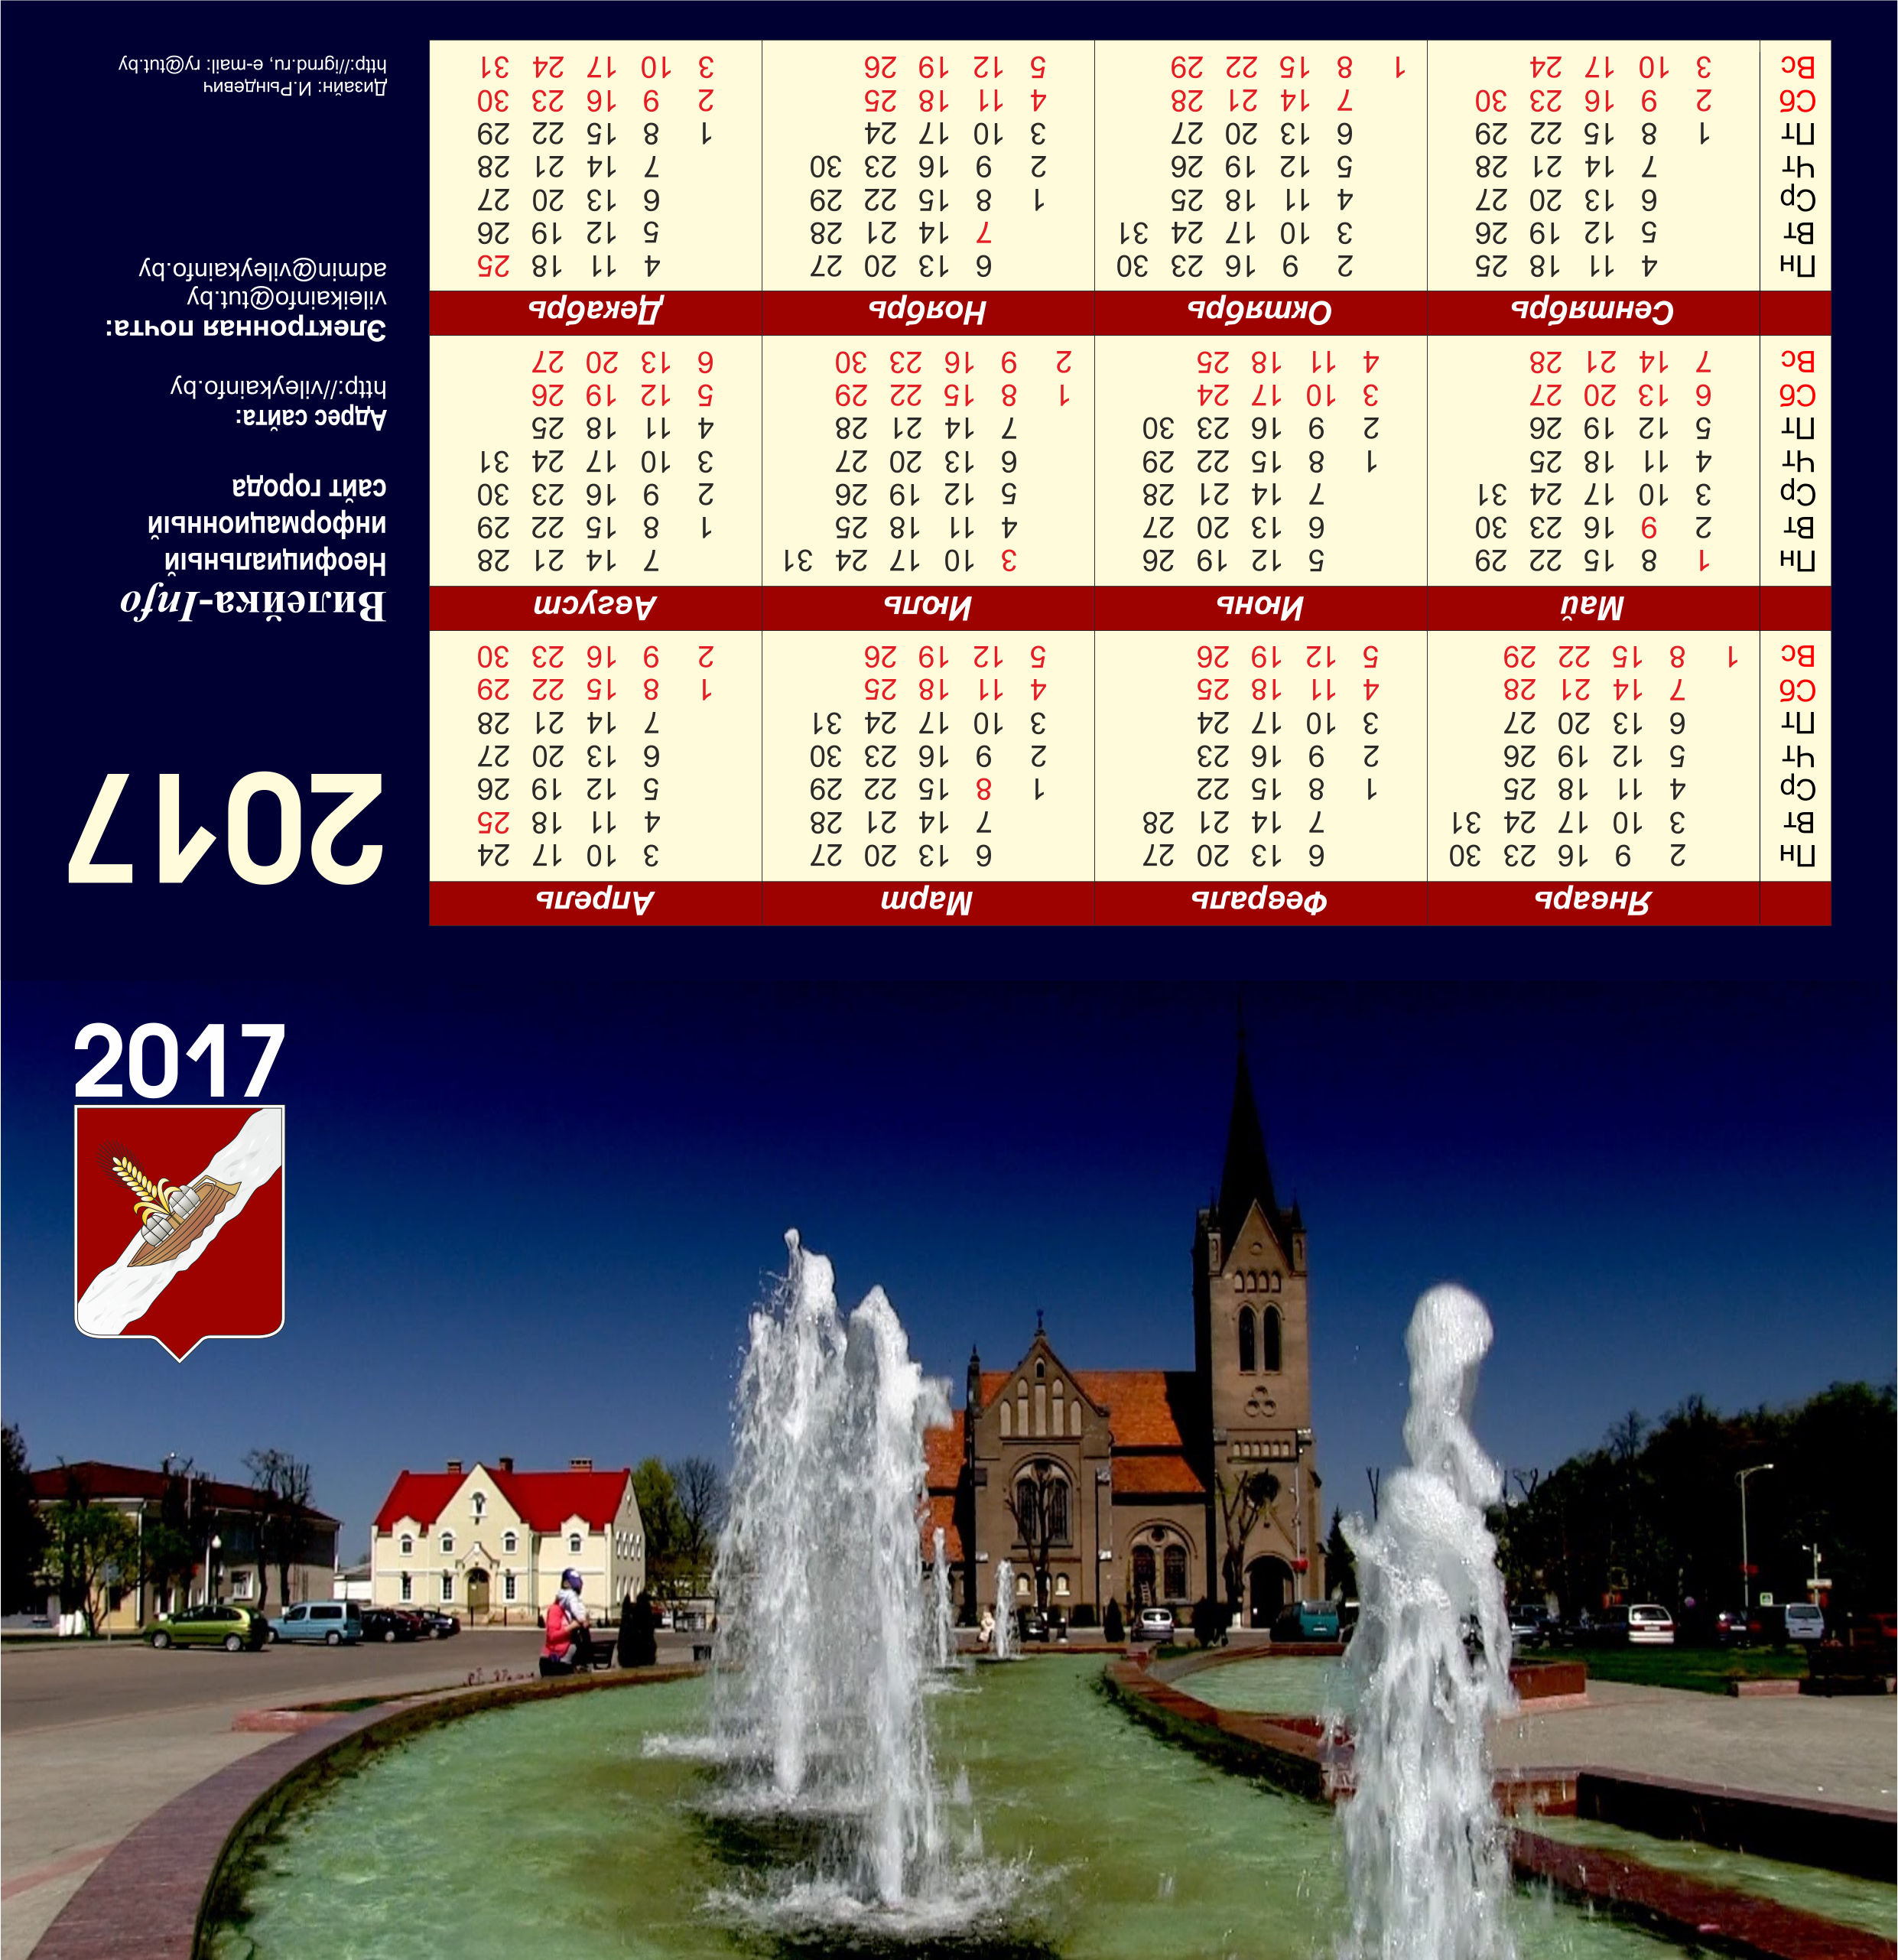 Календарь настольный домик 2017